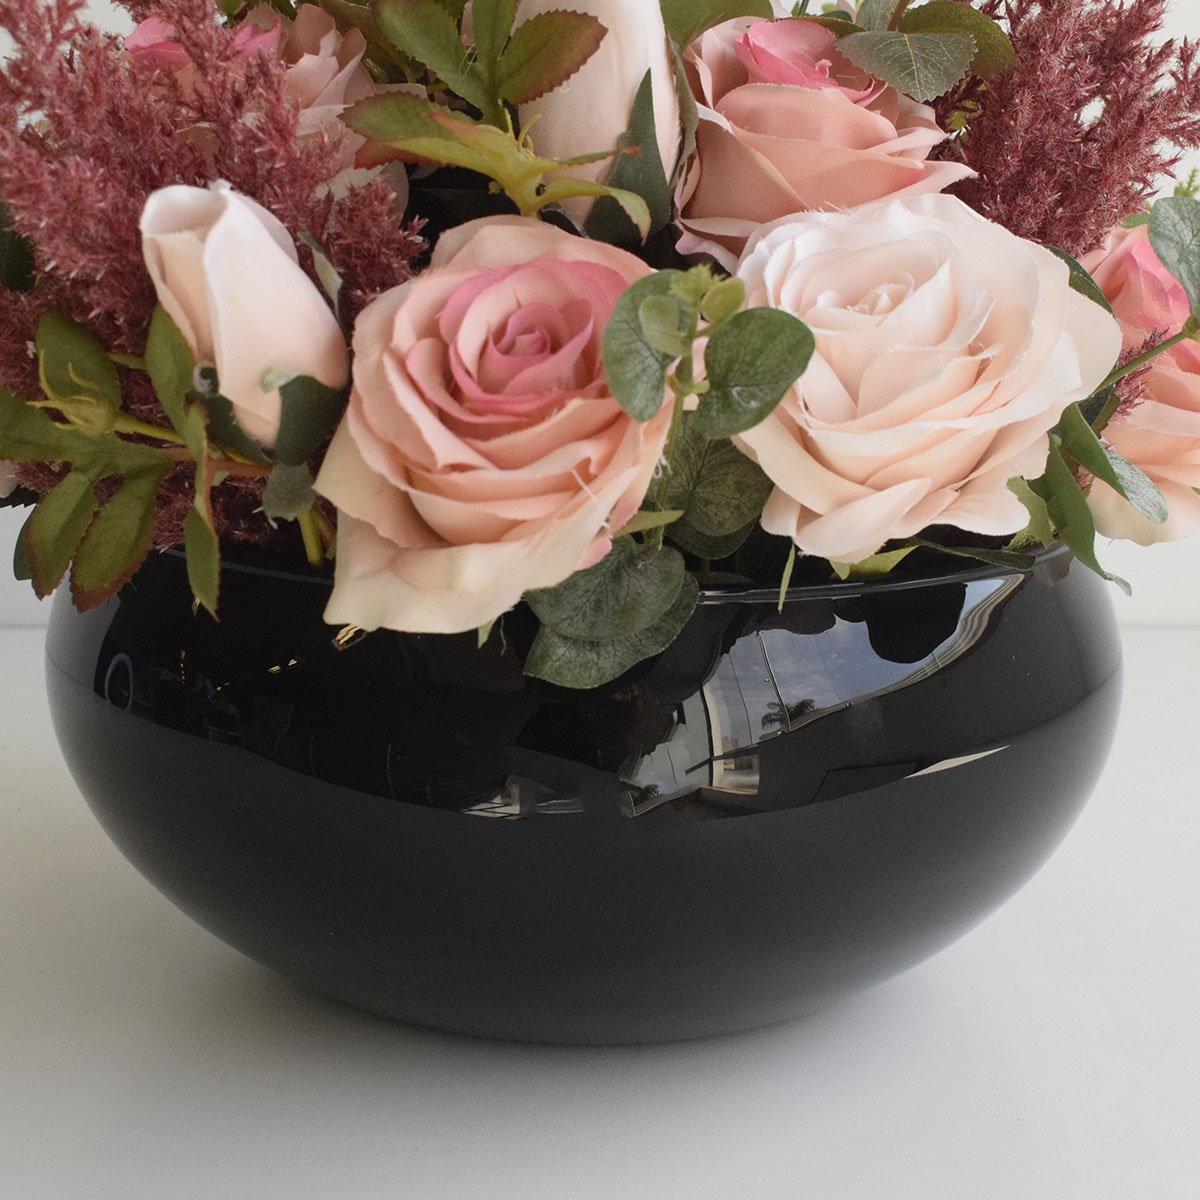 Arranjo de Rosas Rosa e Flores Envelhecidas no Vaso de Vidro Preto |linha Permanente Formosinha - 3